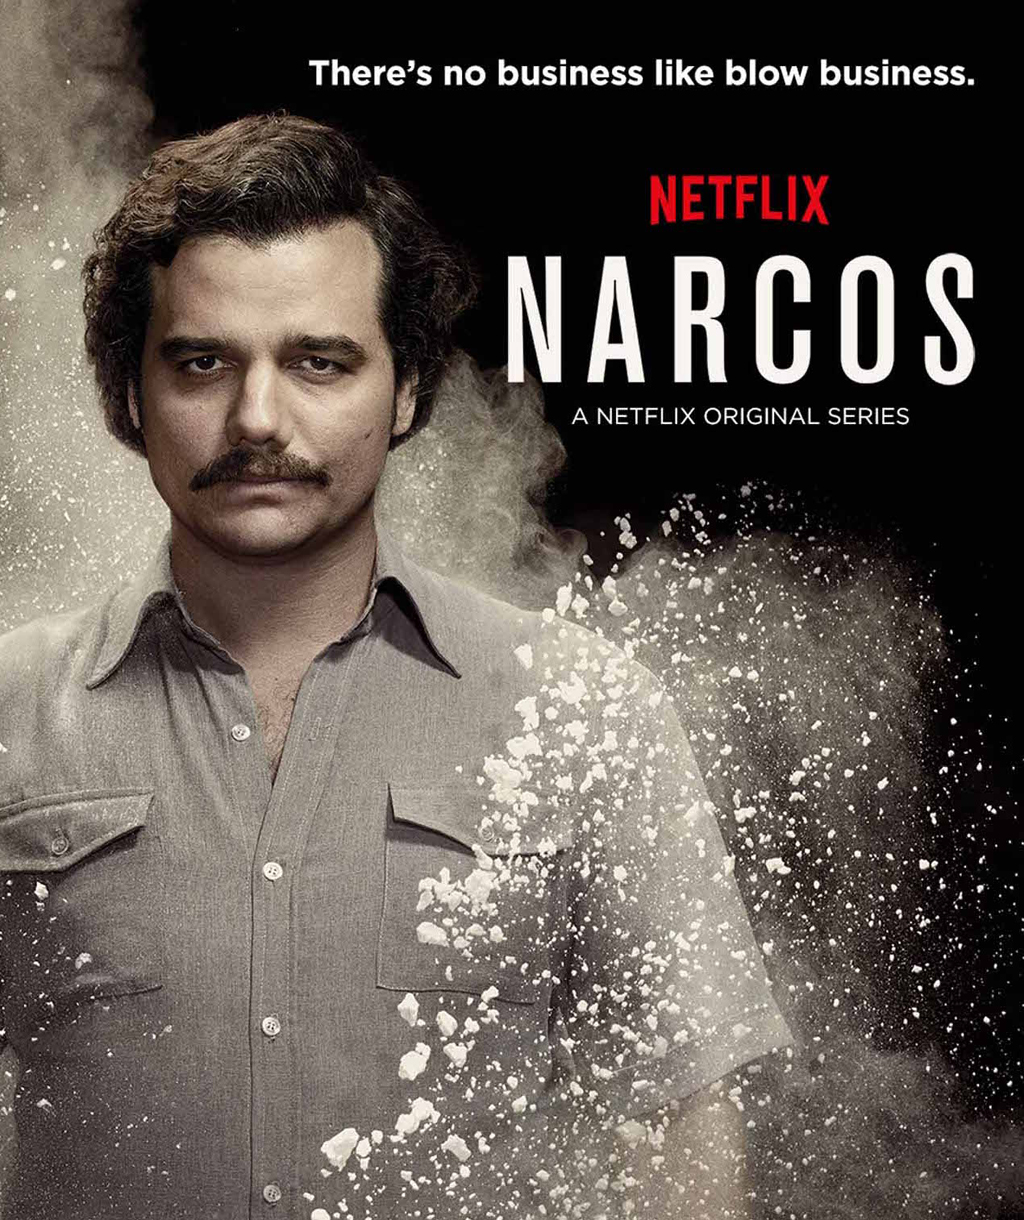 Hijo de Pablo Escobar  molesto por serie “Narcos”